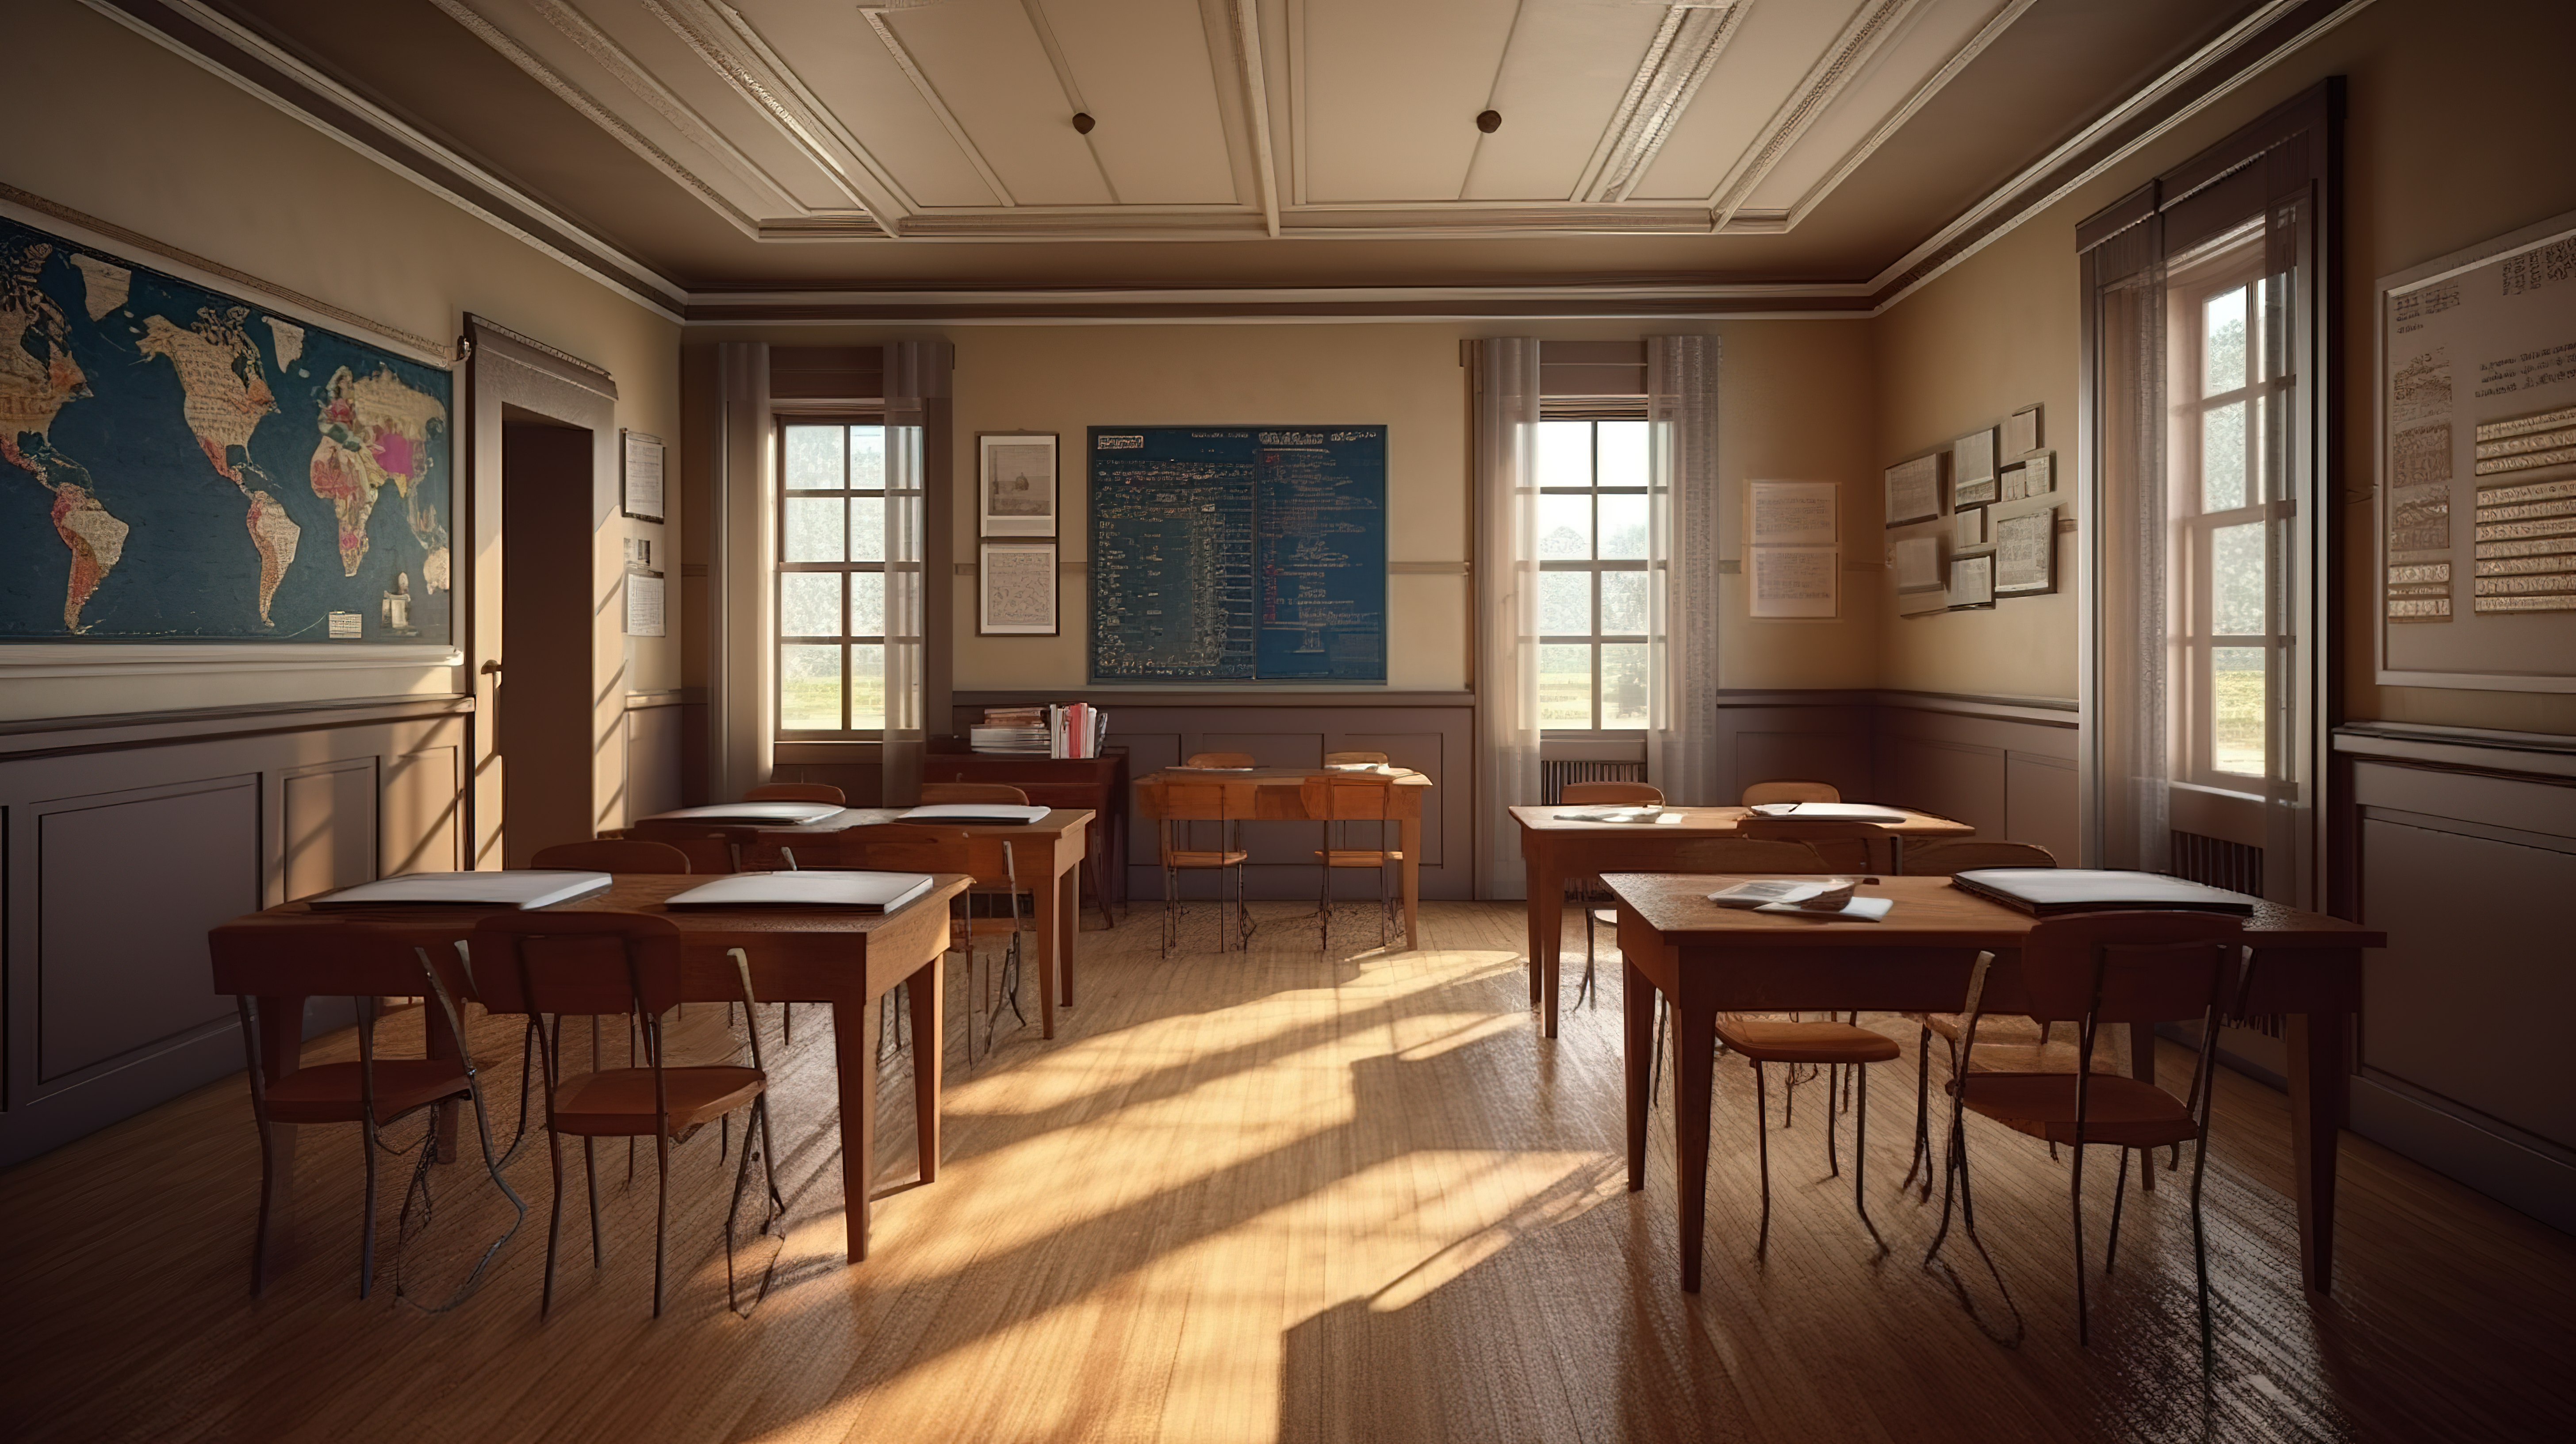 3d 可视化的古典学校教室图片